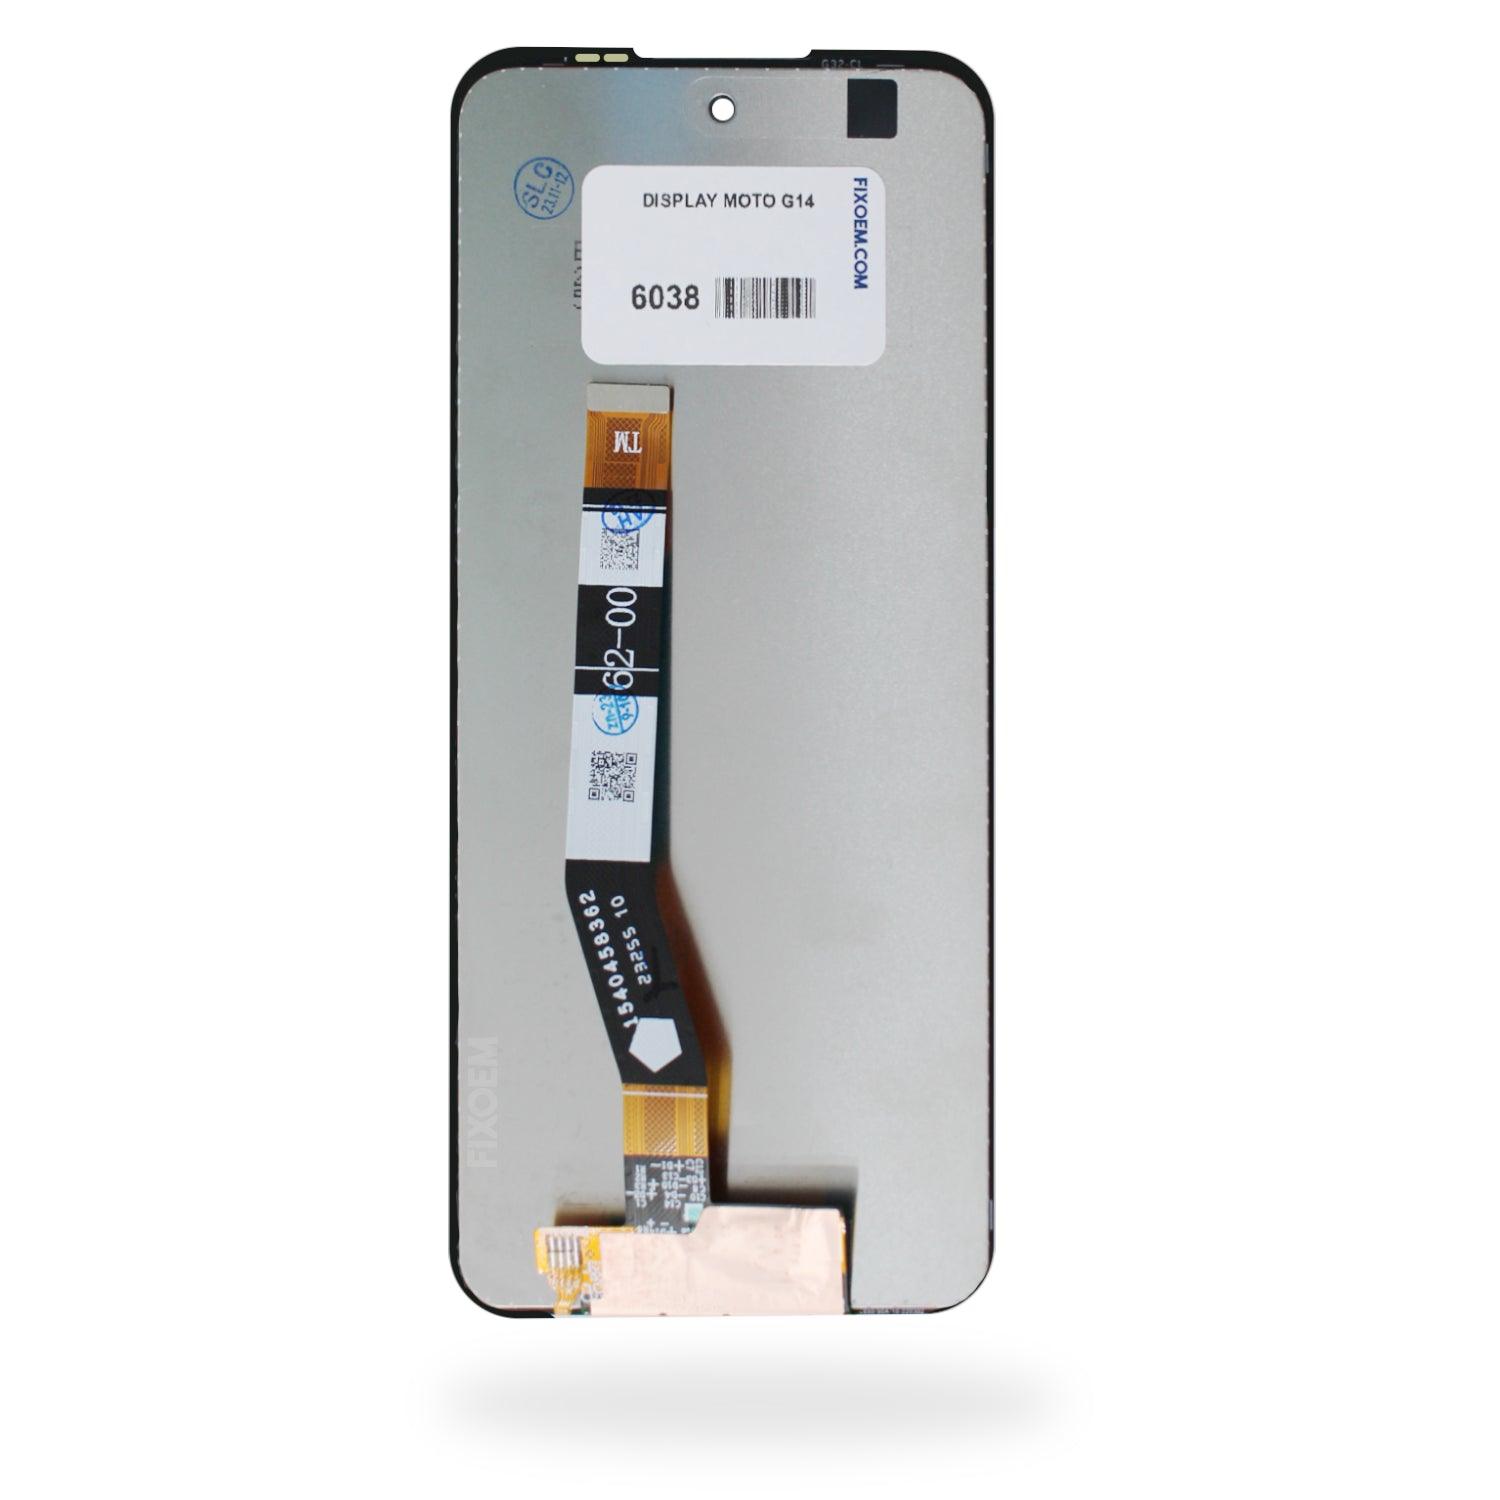 Display Moto G14 Xt2341 / Moto G54 Xt2343 a solo $ 290.00 Refaccion y puestos celulares, refurbish y microelectronica.- FixOEM